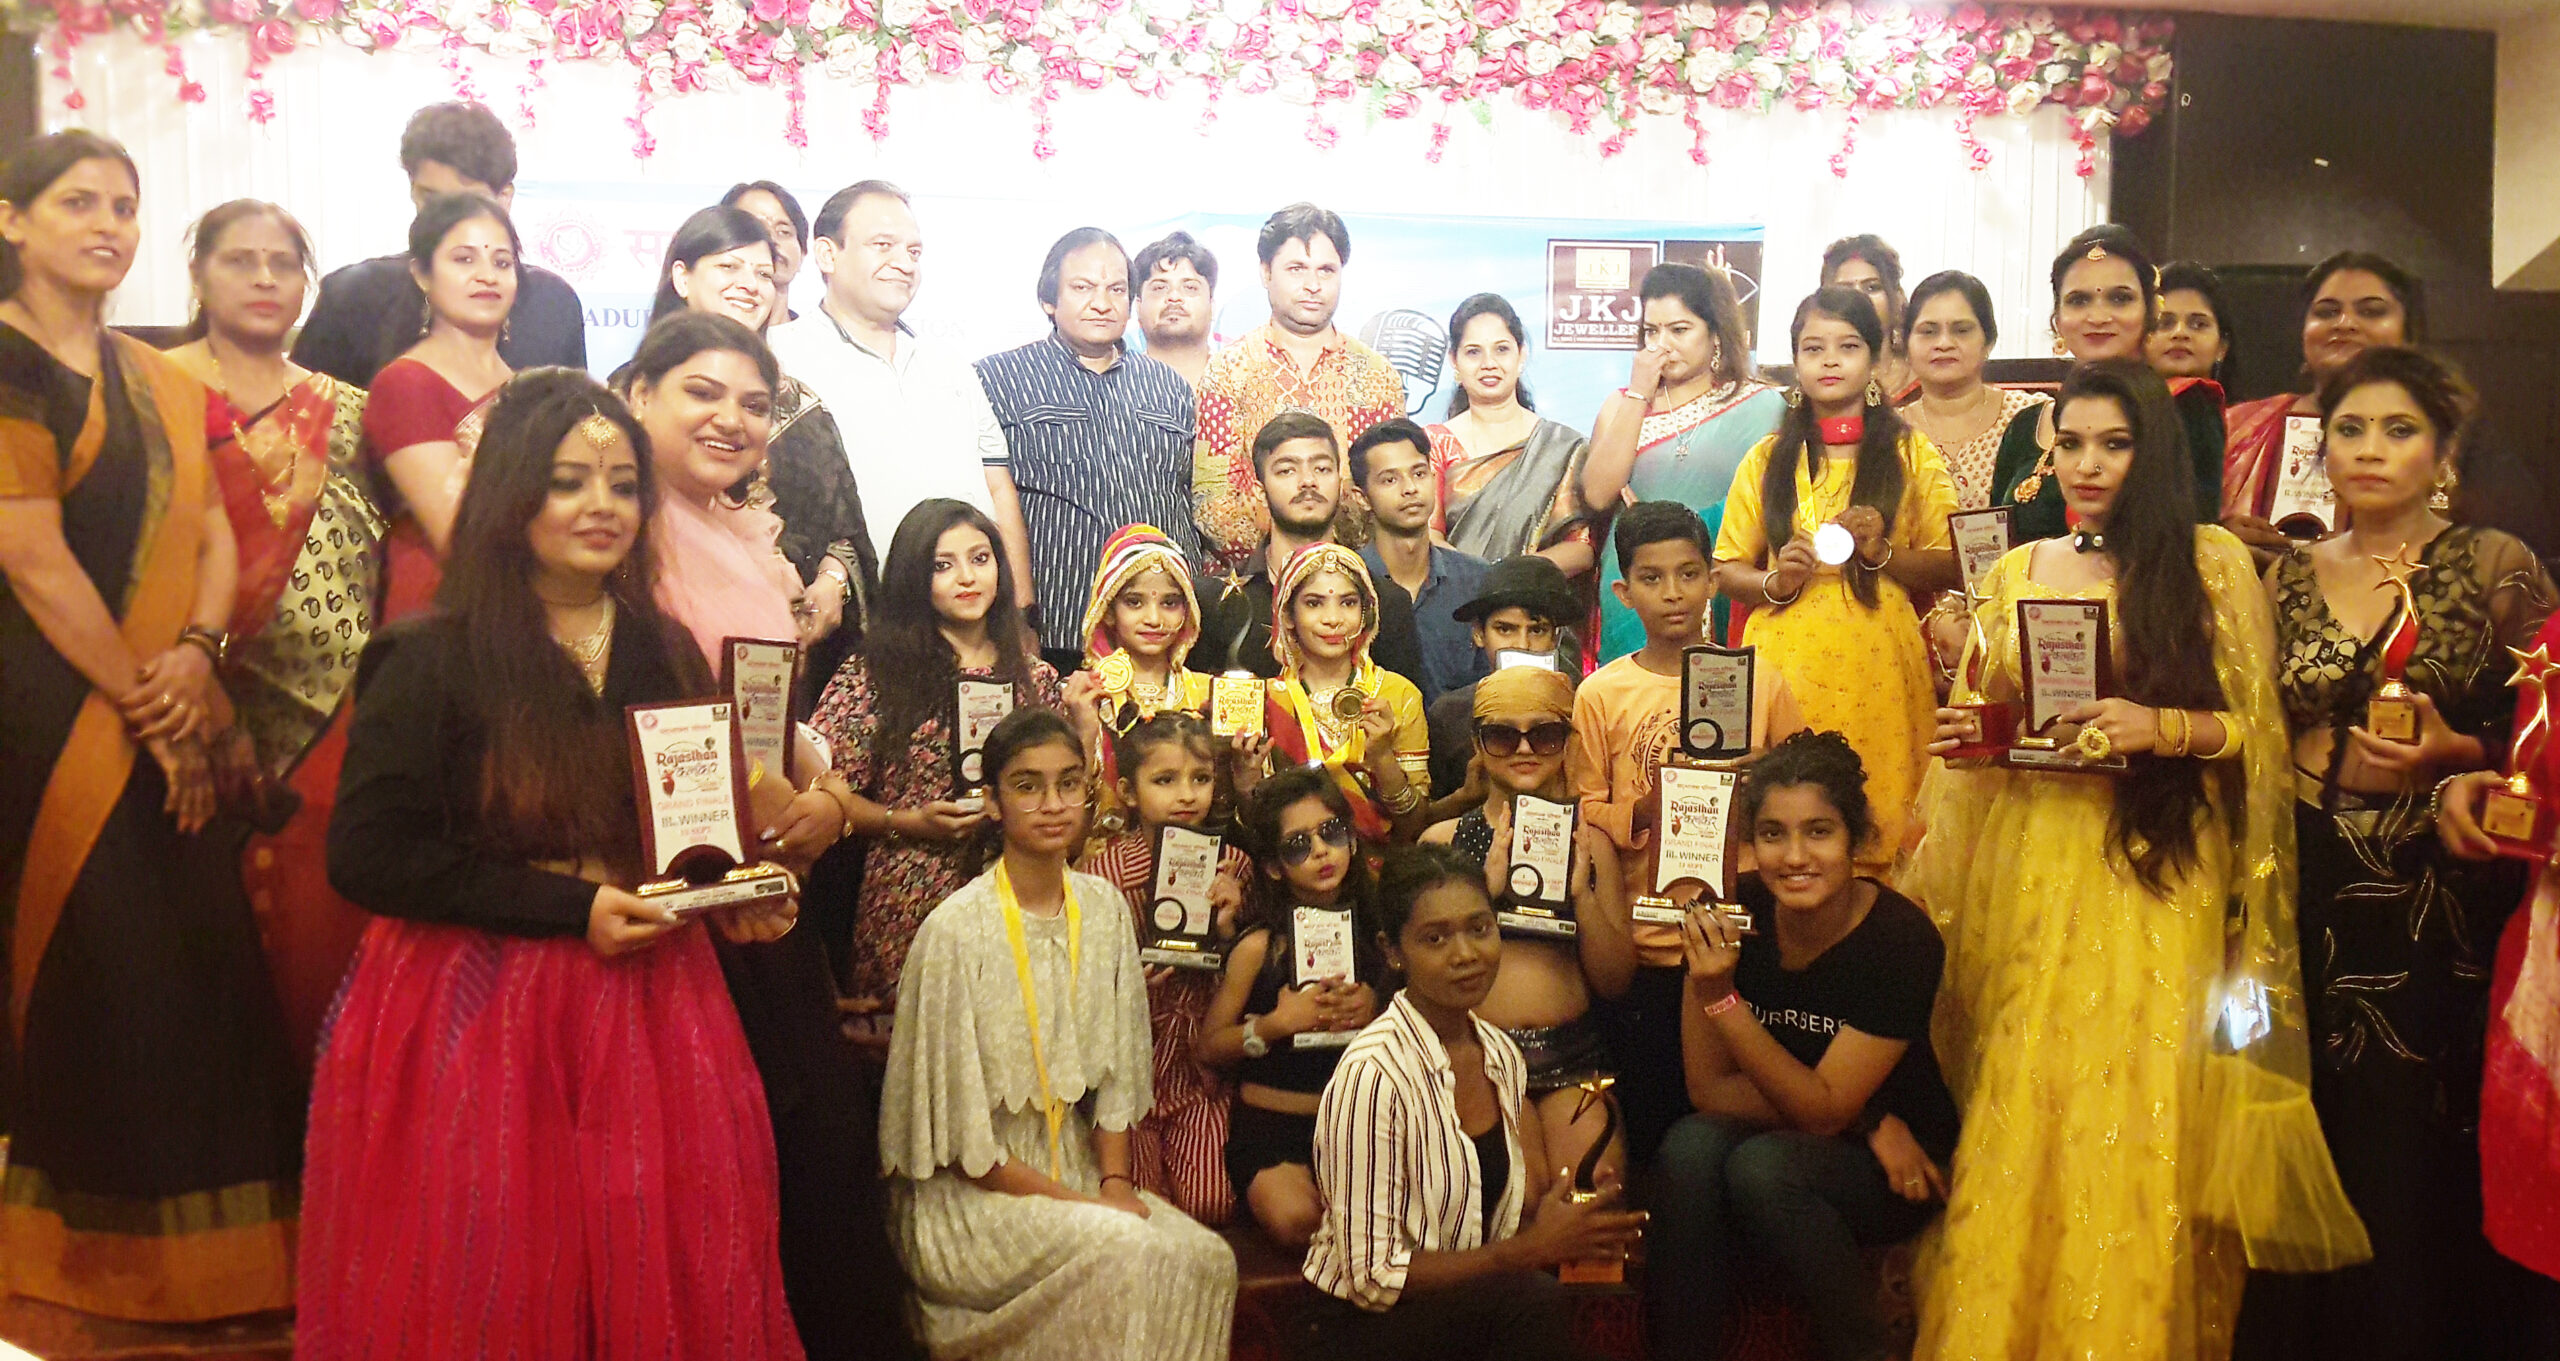 सद्भावना परिवार द्वारा आयोजित हुआ राजस्थान के कलाकार टैलेंट शो सीजन 3 का फाइनल